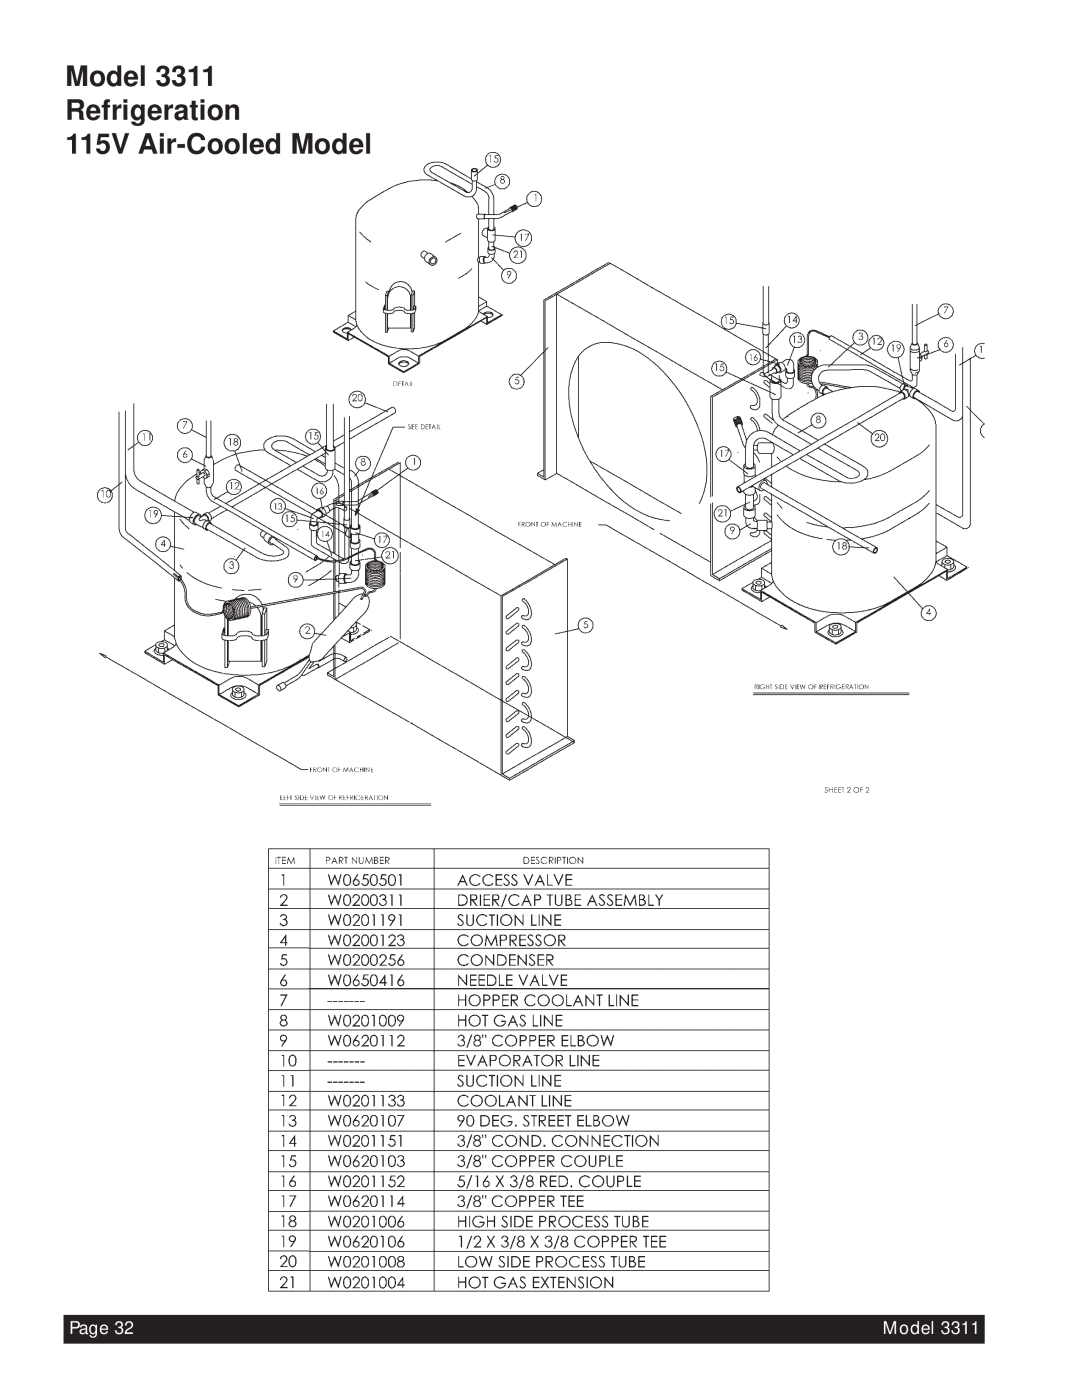 Beverage-Air 3311 manual Model Refrigeration 115V Air-CooledModel, Page 